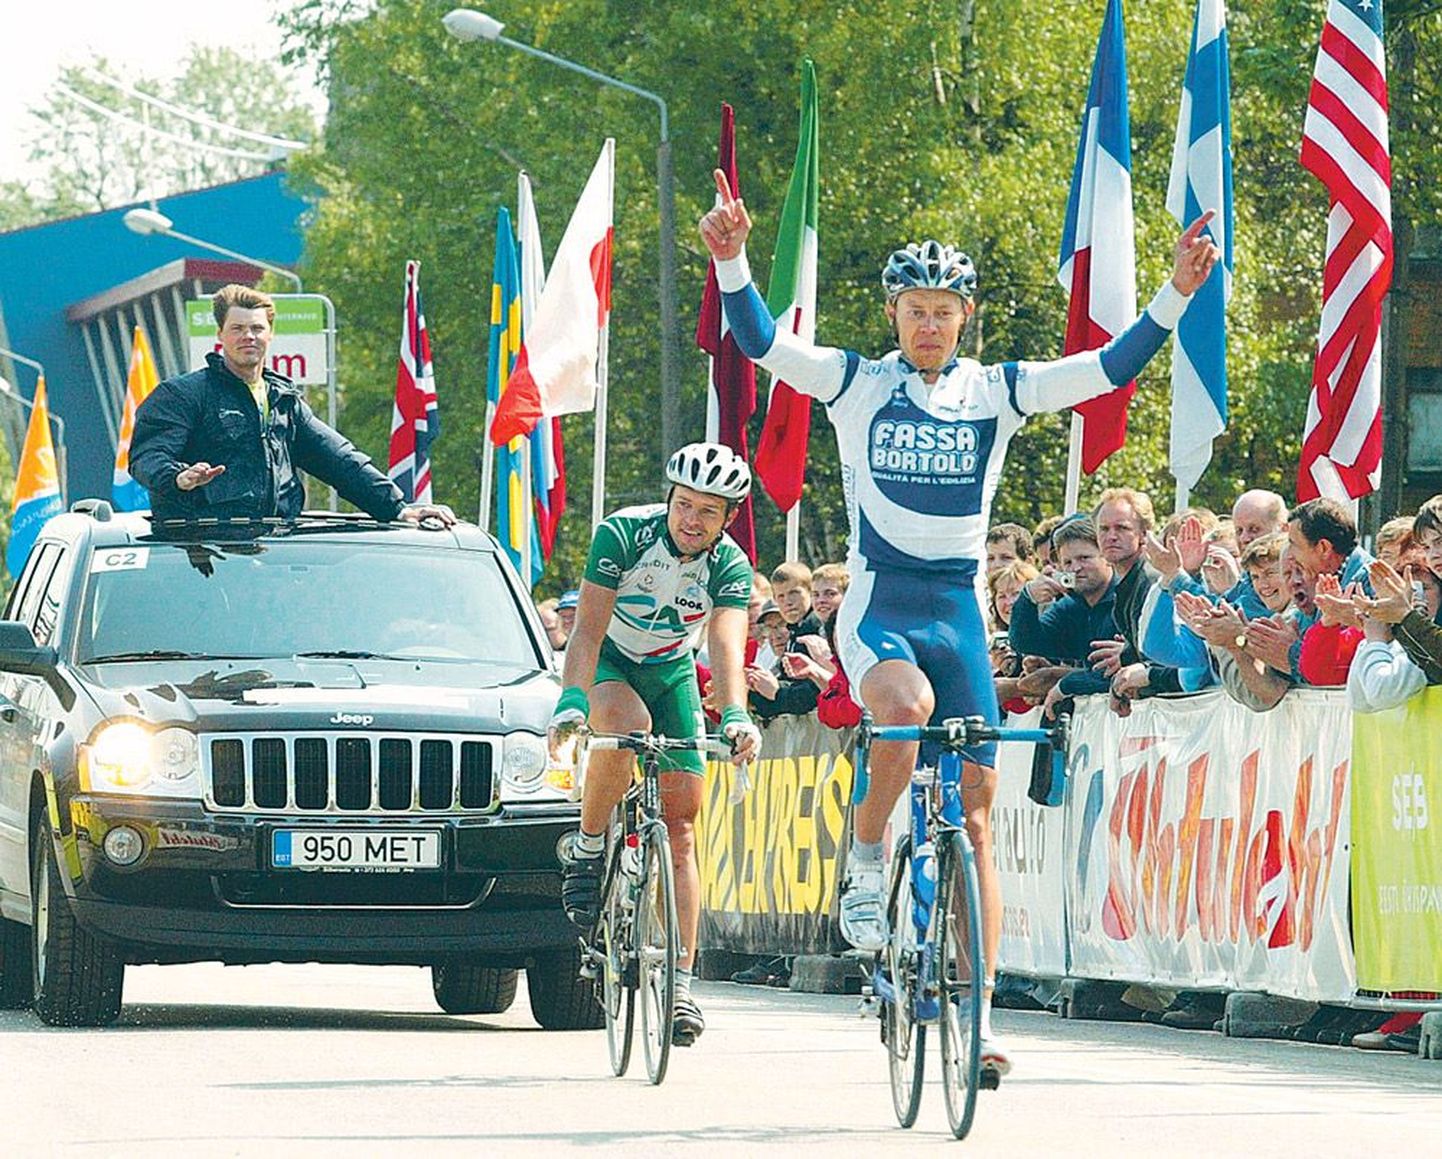 Andrus Aug võitis 2005. aastal Tartu rattaralli, kuid Eesti meistriks ta Fassa Bortolo juhtide suureks rõõmuks ei tulnud. Jaan Kirsipuu (keskel) oli kolmas.